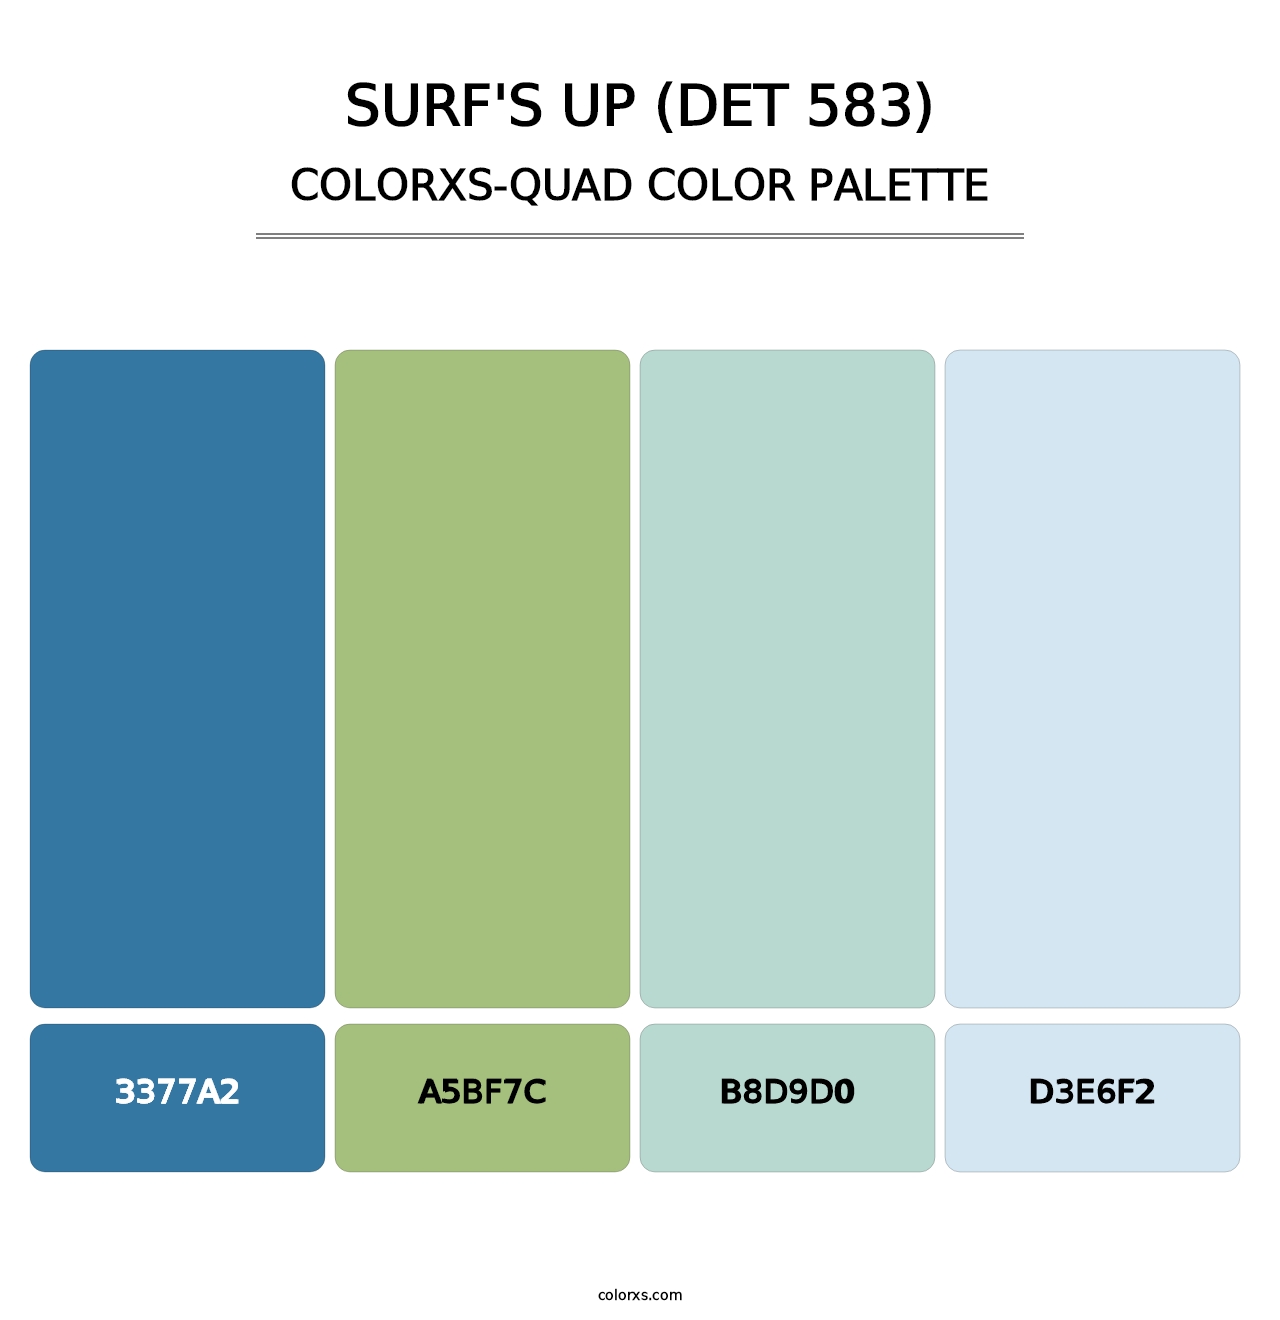 Surf's Up (DET 583) - Colorxs Quad Palette